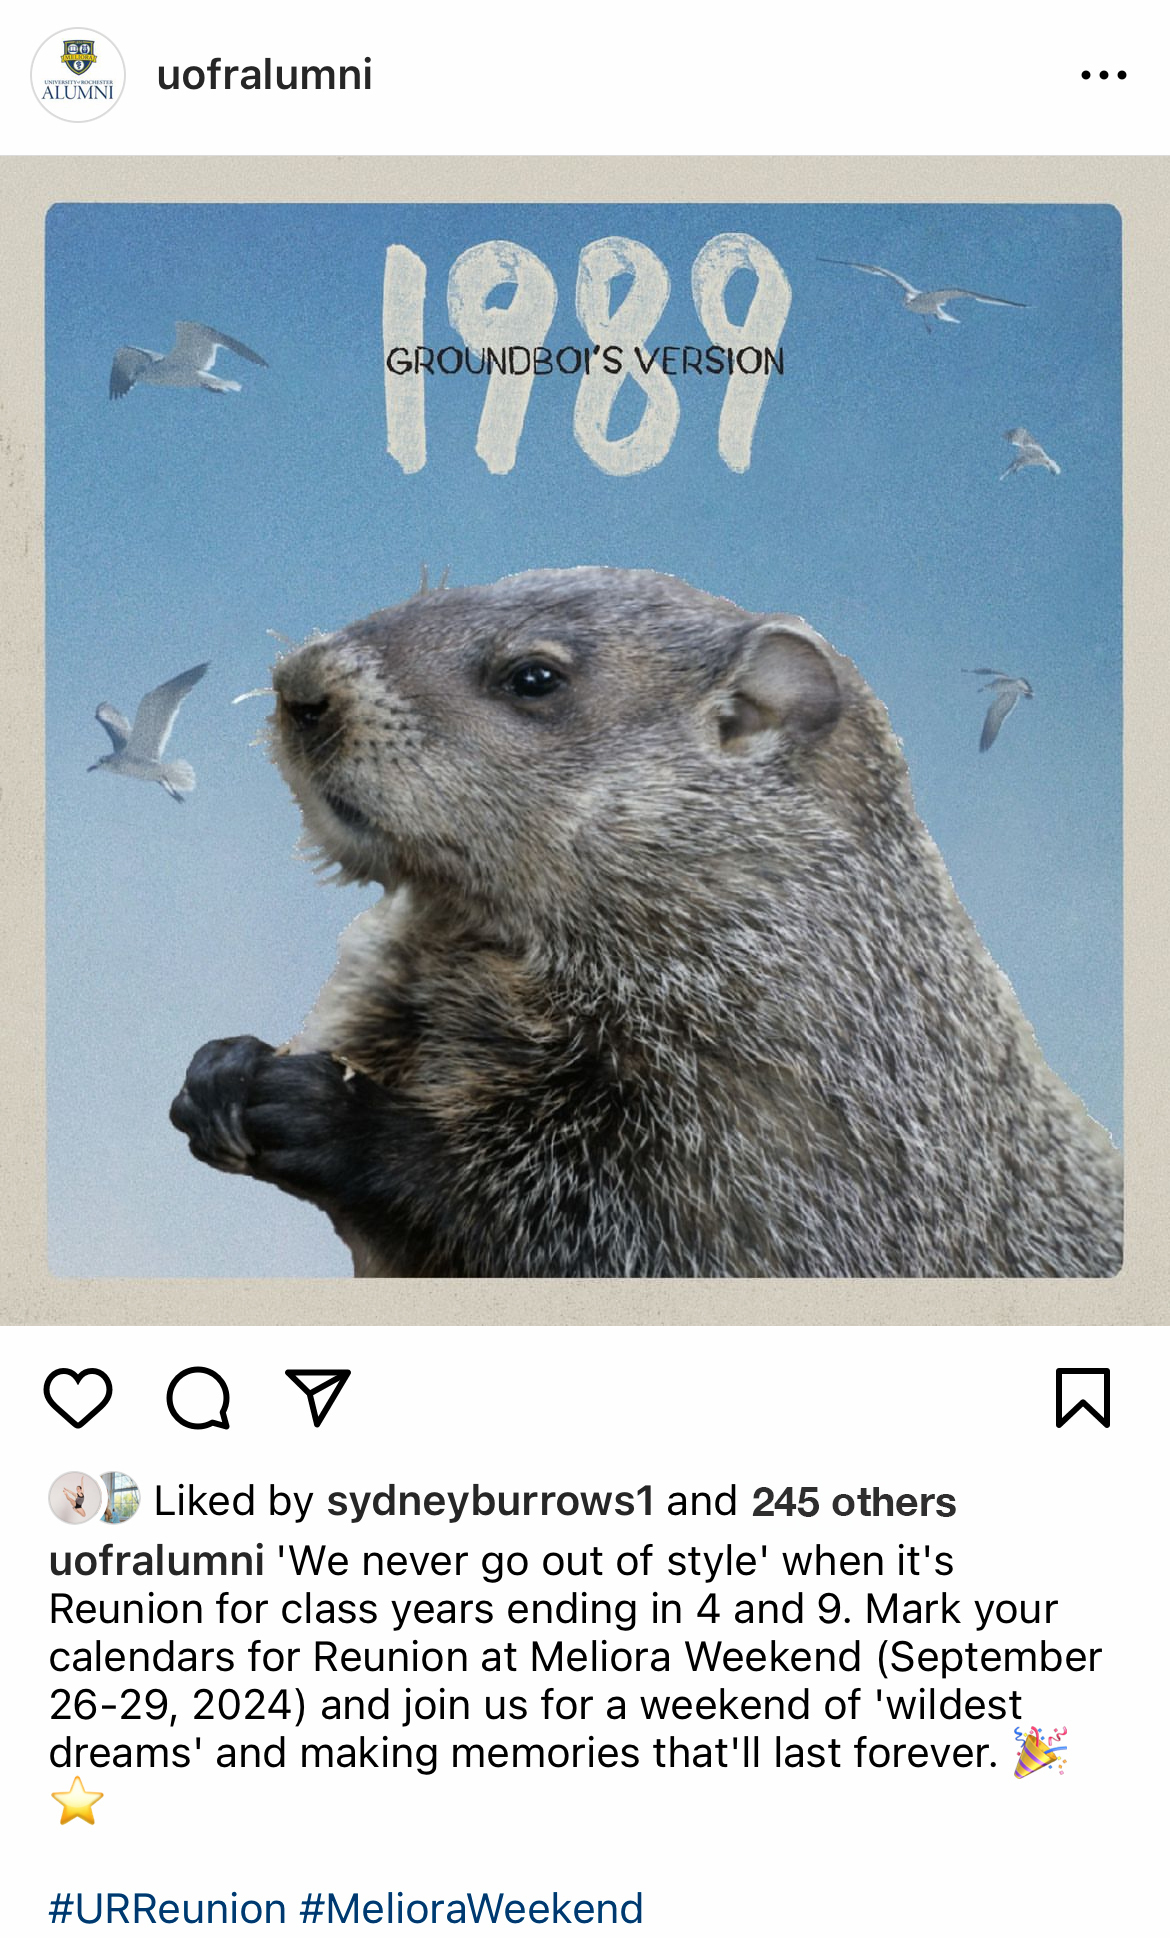 screenshot of Instagram post regarding Reunions in 2024